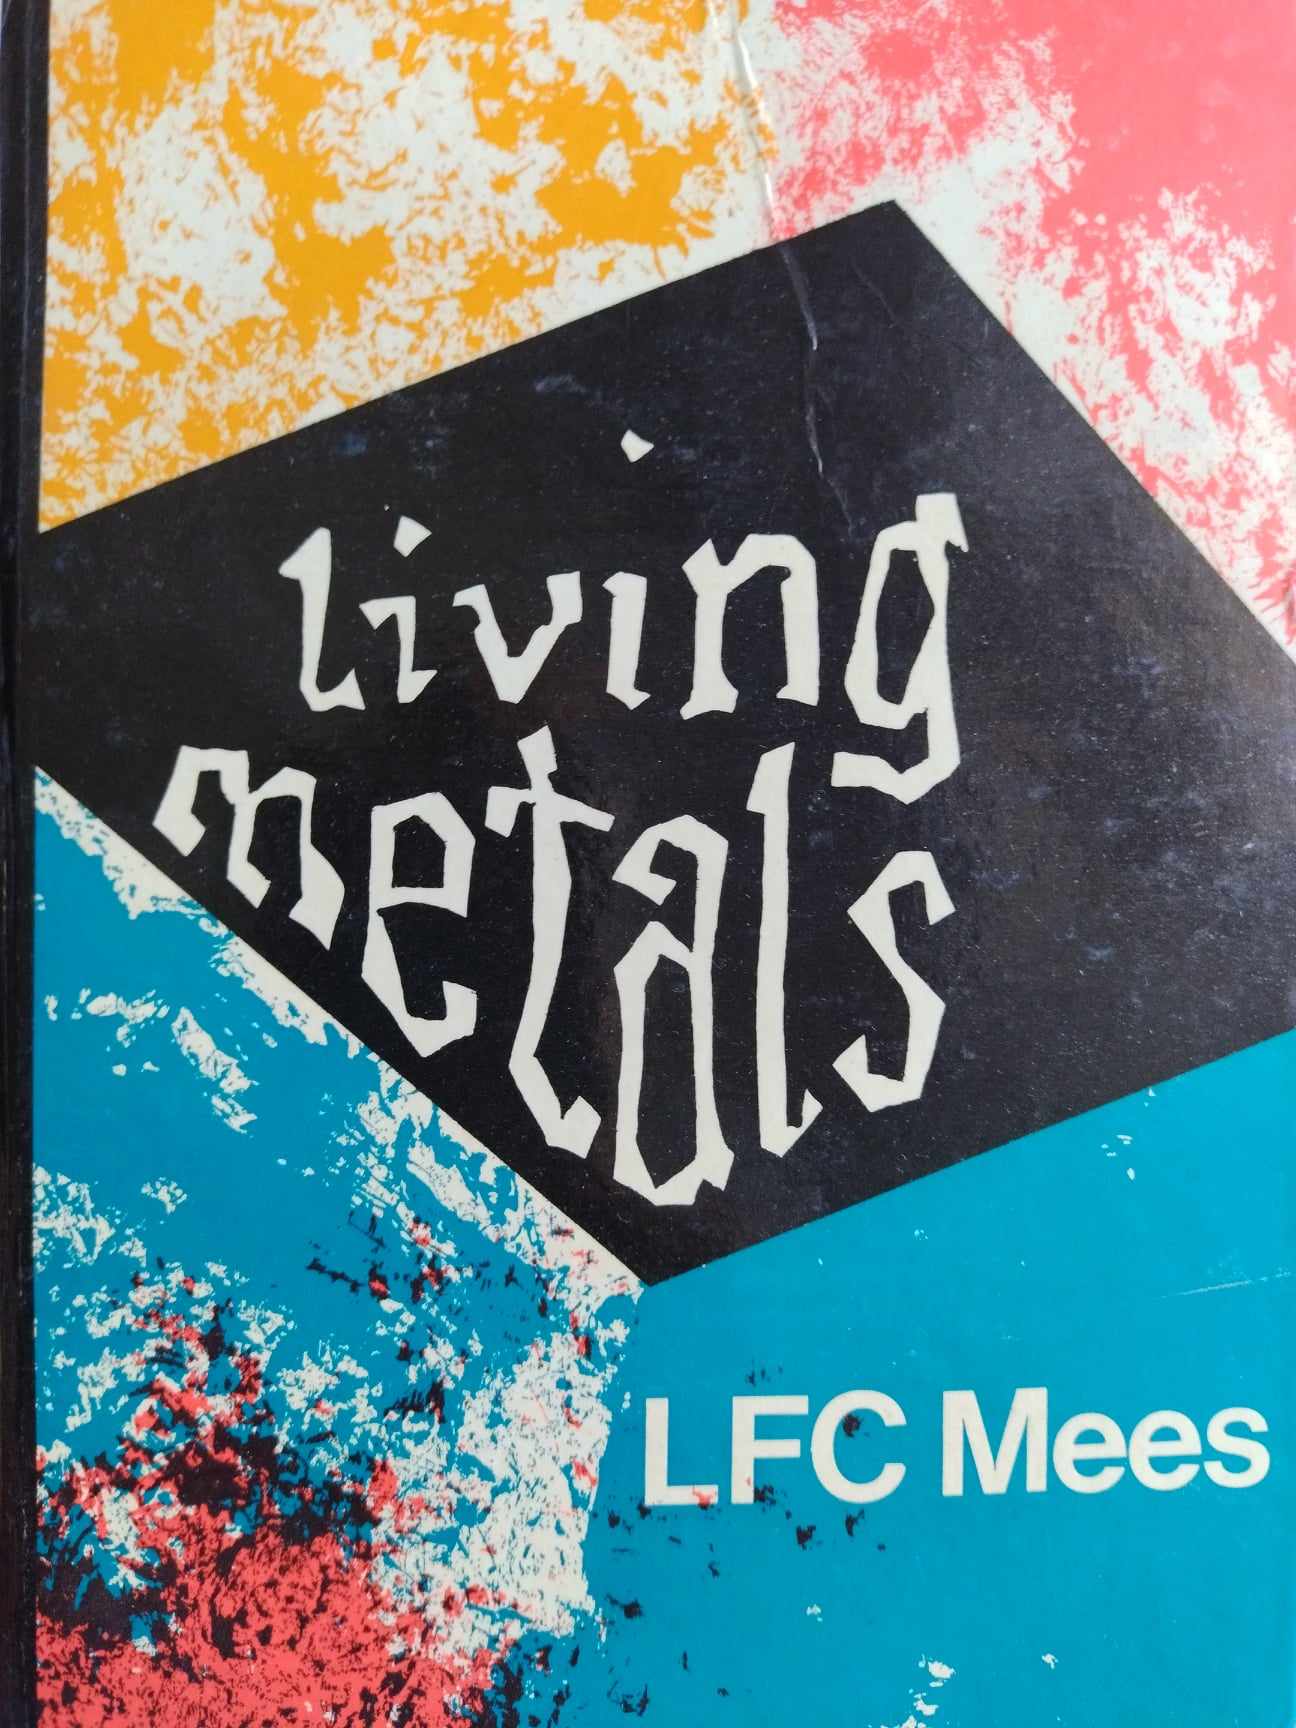 Living metals